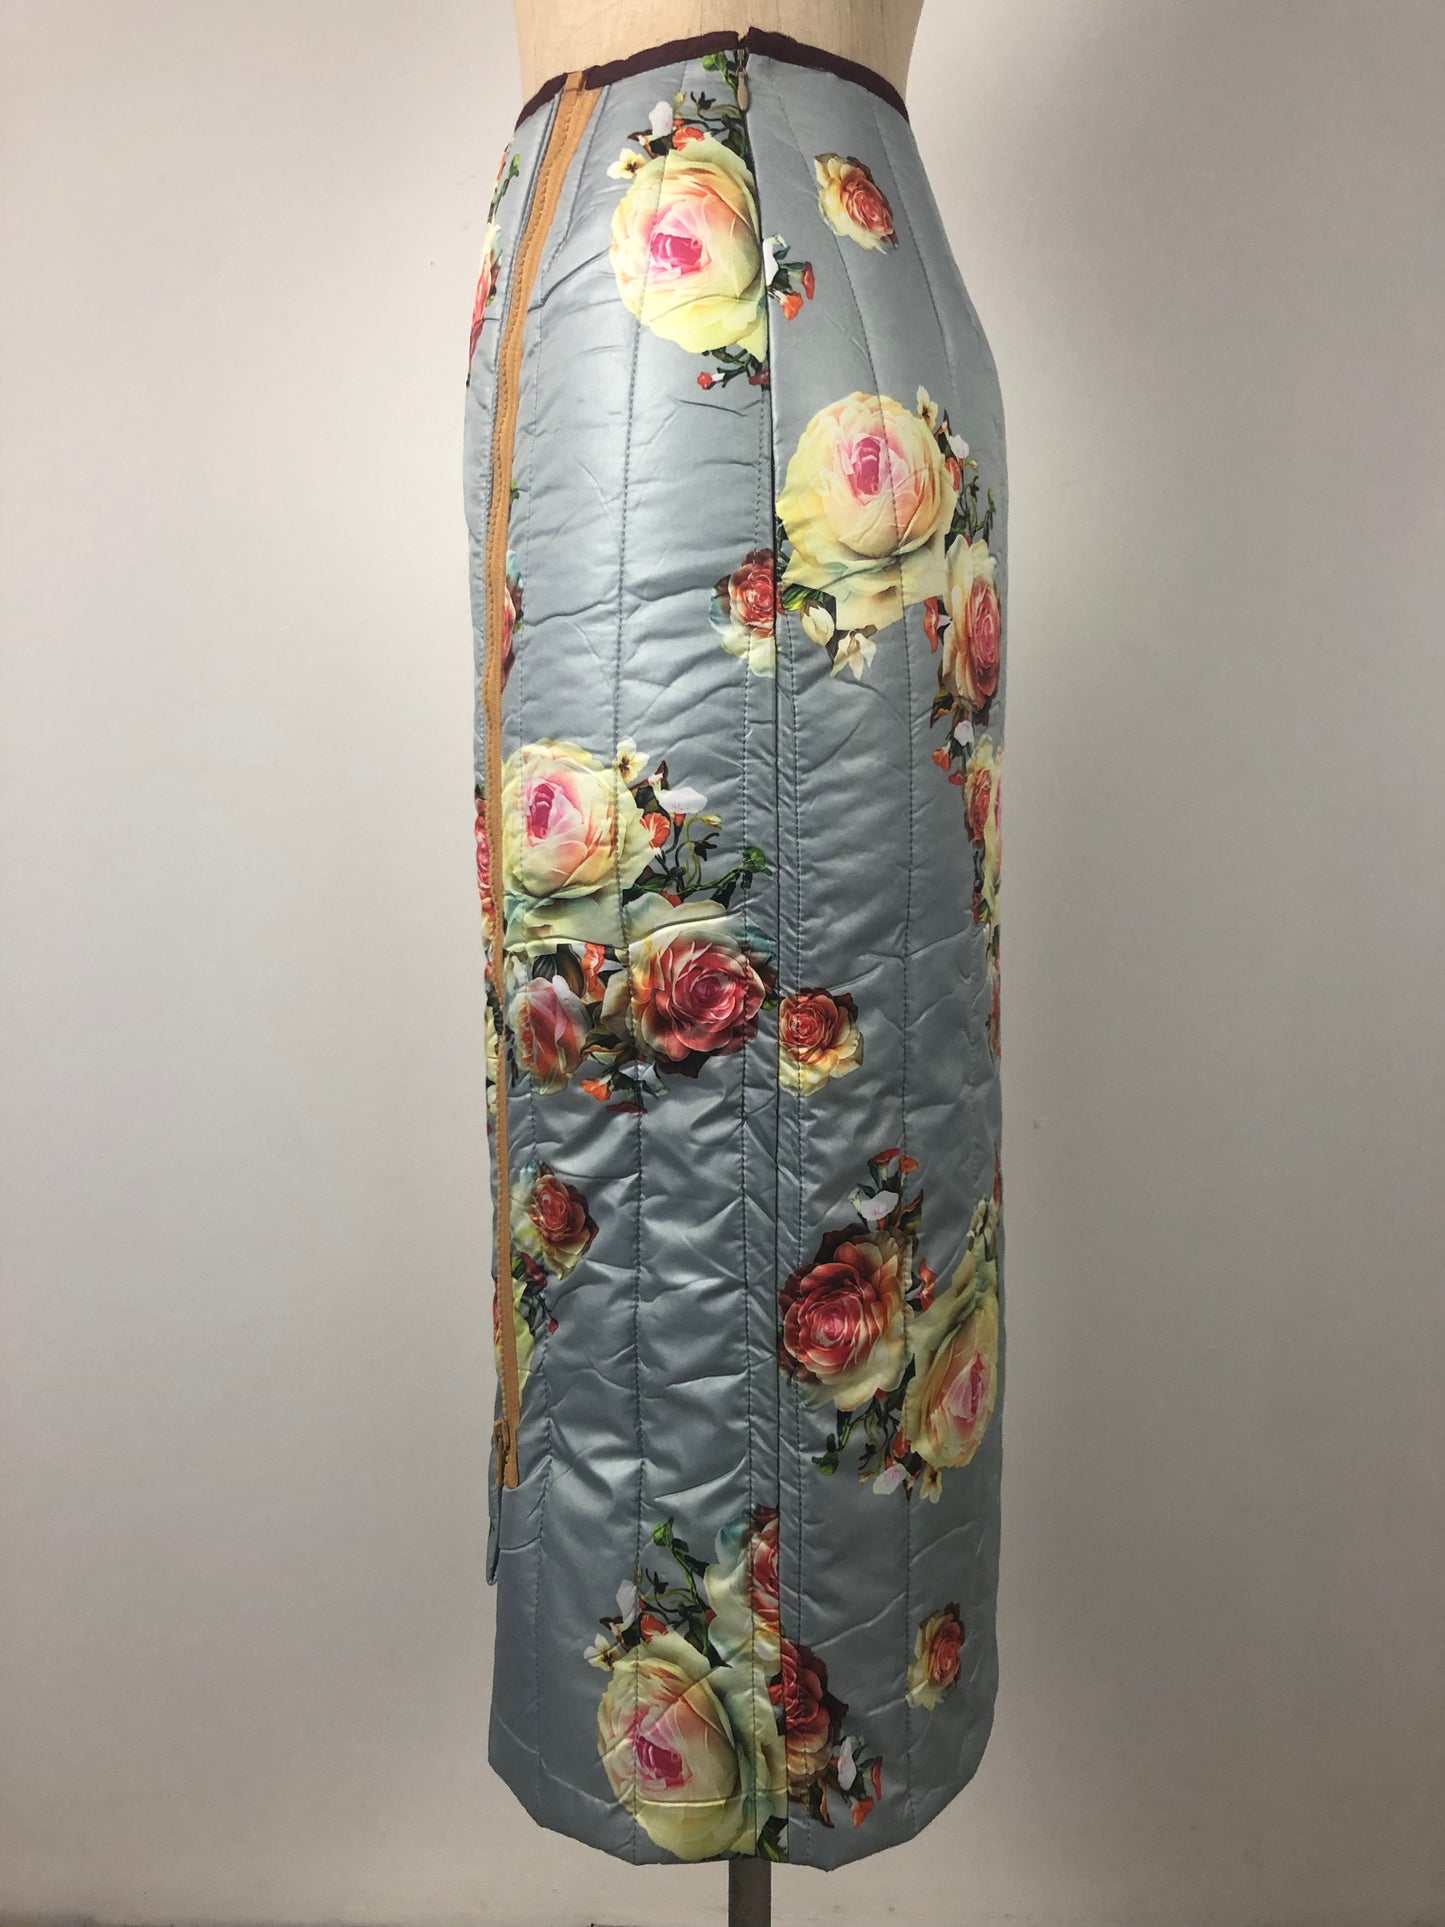 Padded skirt met flowerprint homemade